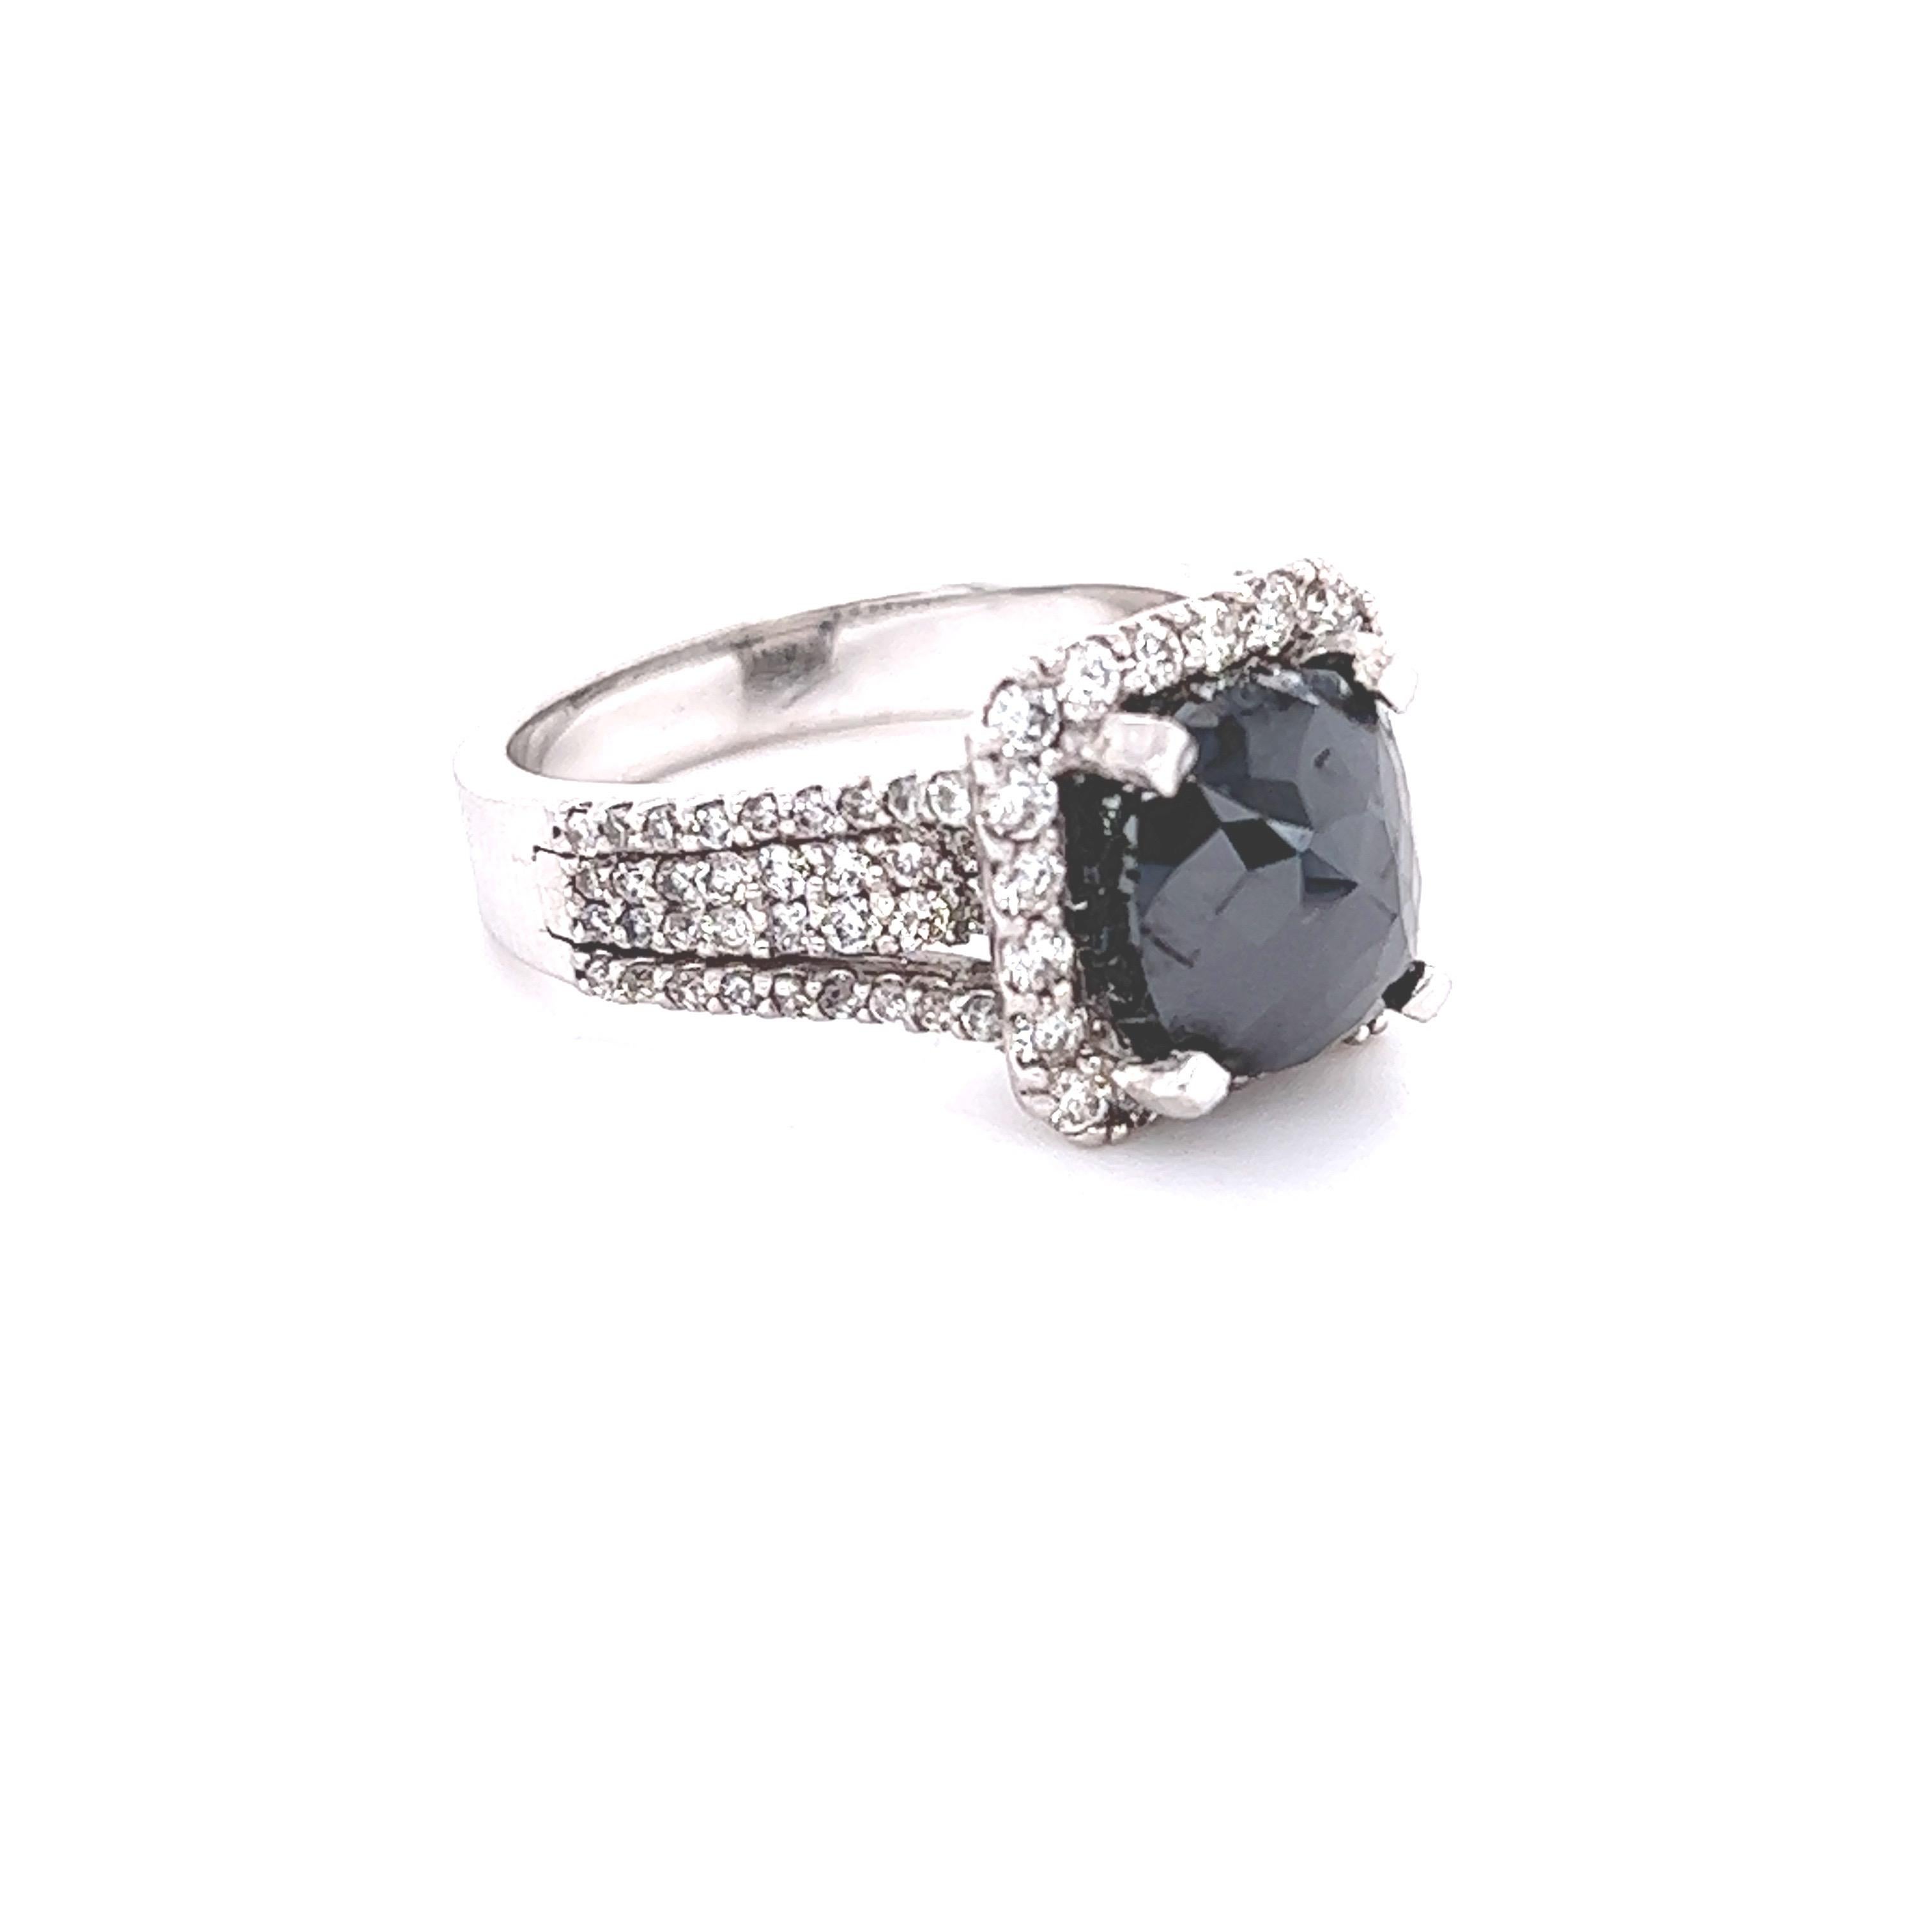 Der natürliche schwarze Diamant im Kissenschliff hat 3,75 Karat und ist umgeben von 100 Diamanten im Rundschliff mit einem Gewicht von 1,08 Karat (Reinheit: VS, Farbe: H). Das Gesamtkaratgewicht des Rings beträgt 4,83 Karat. Der Black Diamond misst